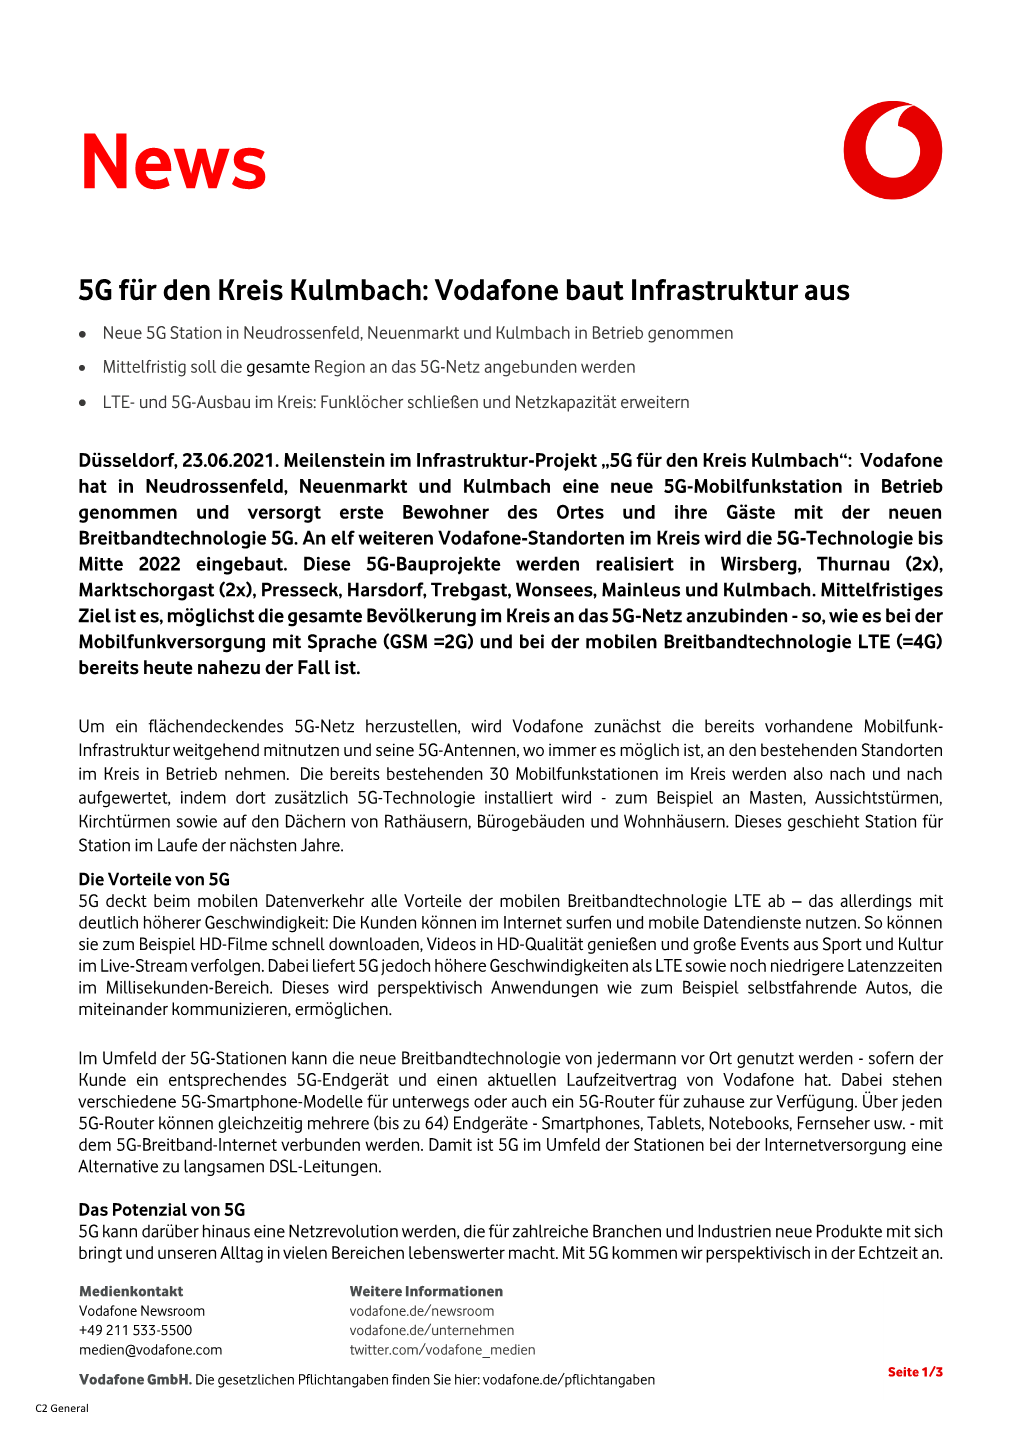 5G Für Den Kreis Kulmbach: Vodafone Baut